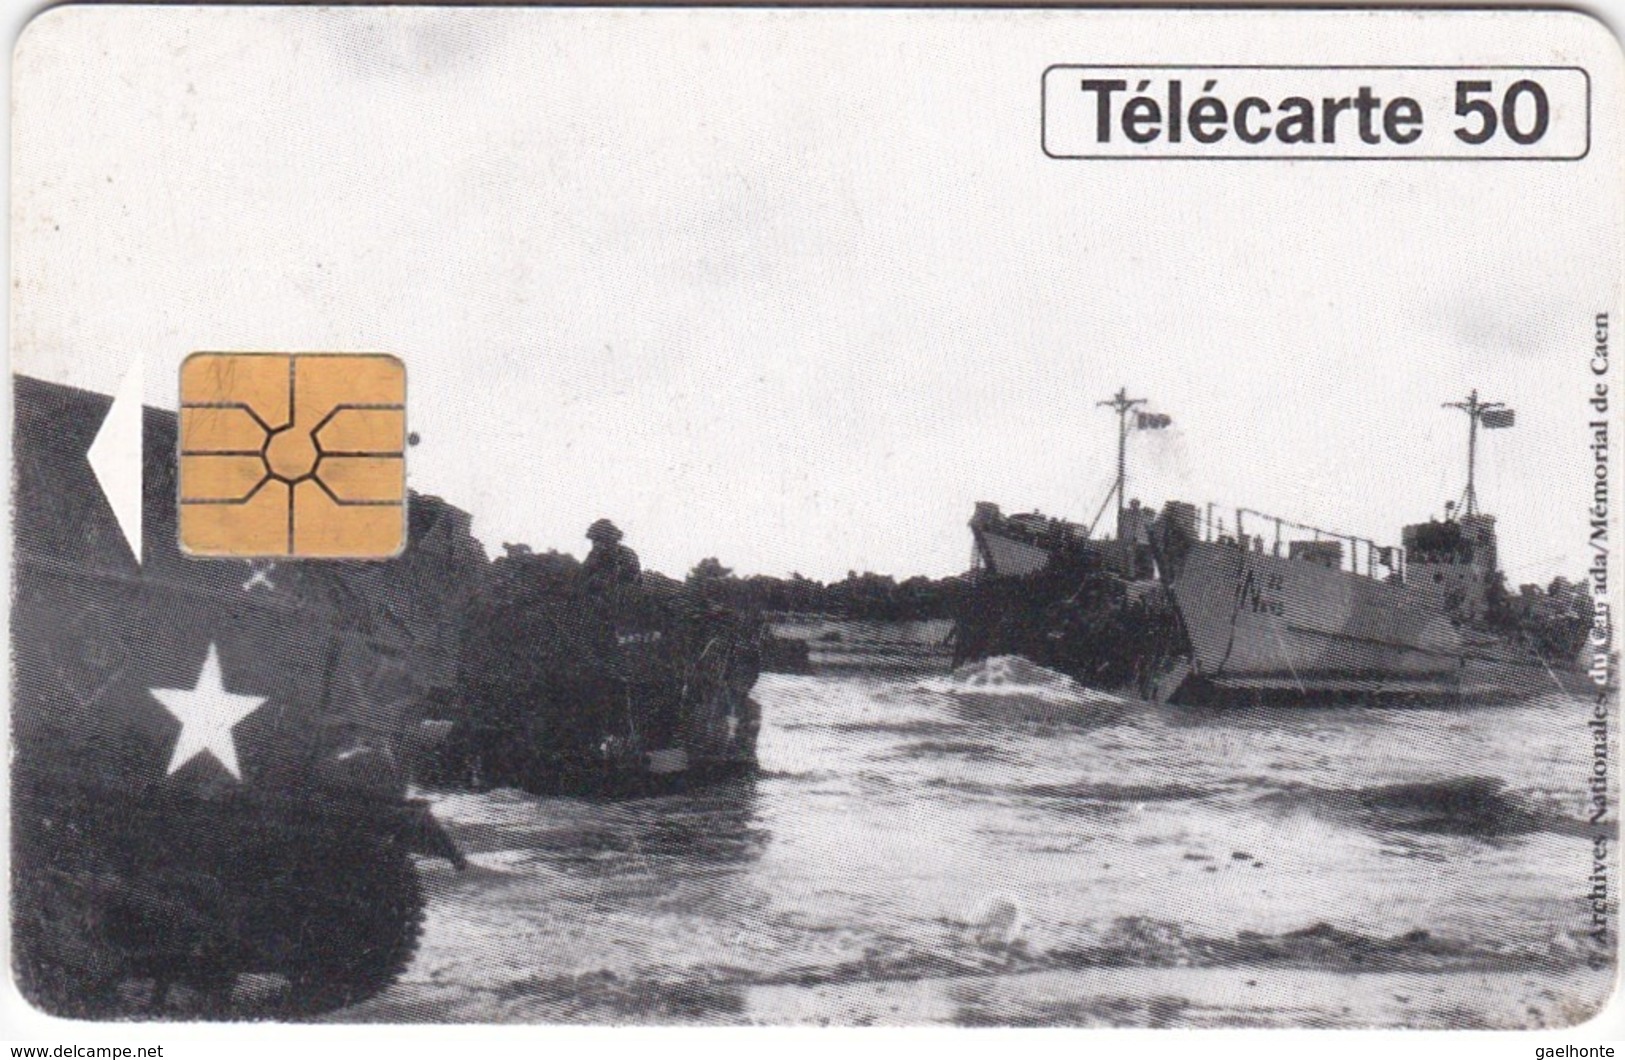 TC117 TÉLÉCARTE 50 UNITÉS - 1944-1994 - 50ème ANNIVERSAIRE DES DEBARQUEMENTS... - JUNO BEACH 06 JUIN 1944 - Armee